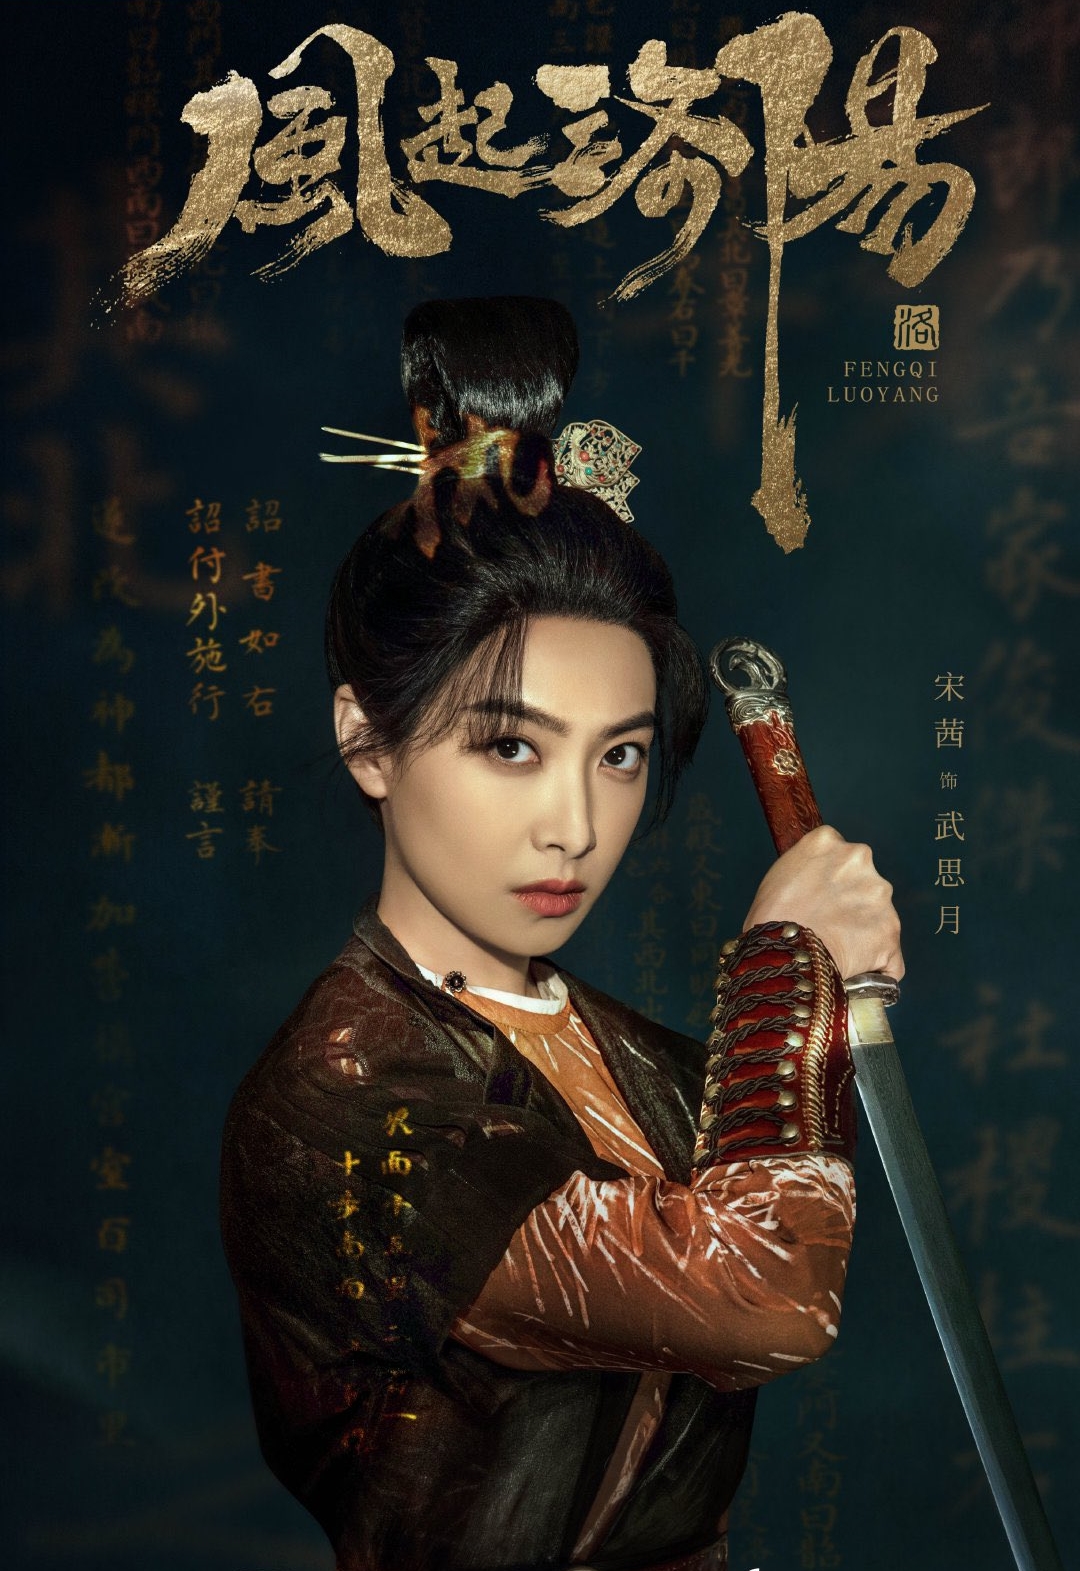 Phim mới của Tống Thiến: Phong khởi Lạc Dương - Luoyang (2021)